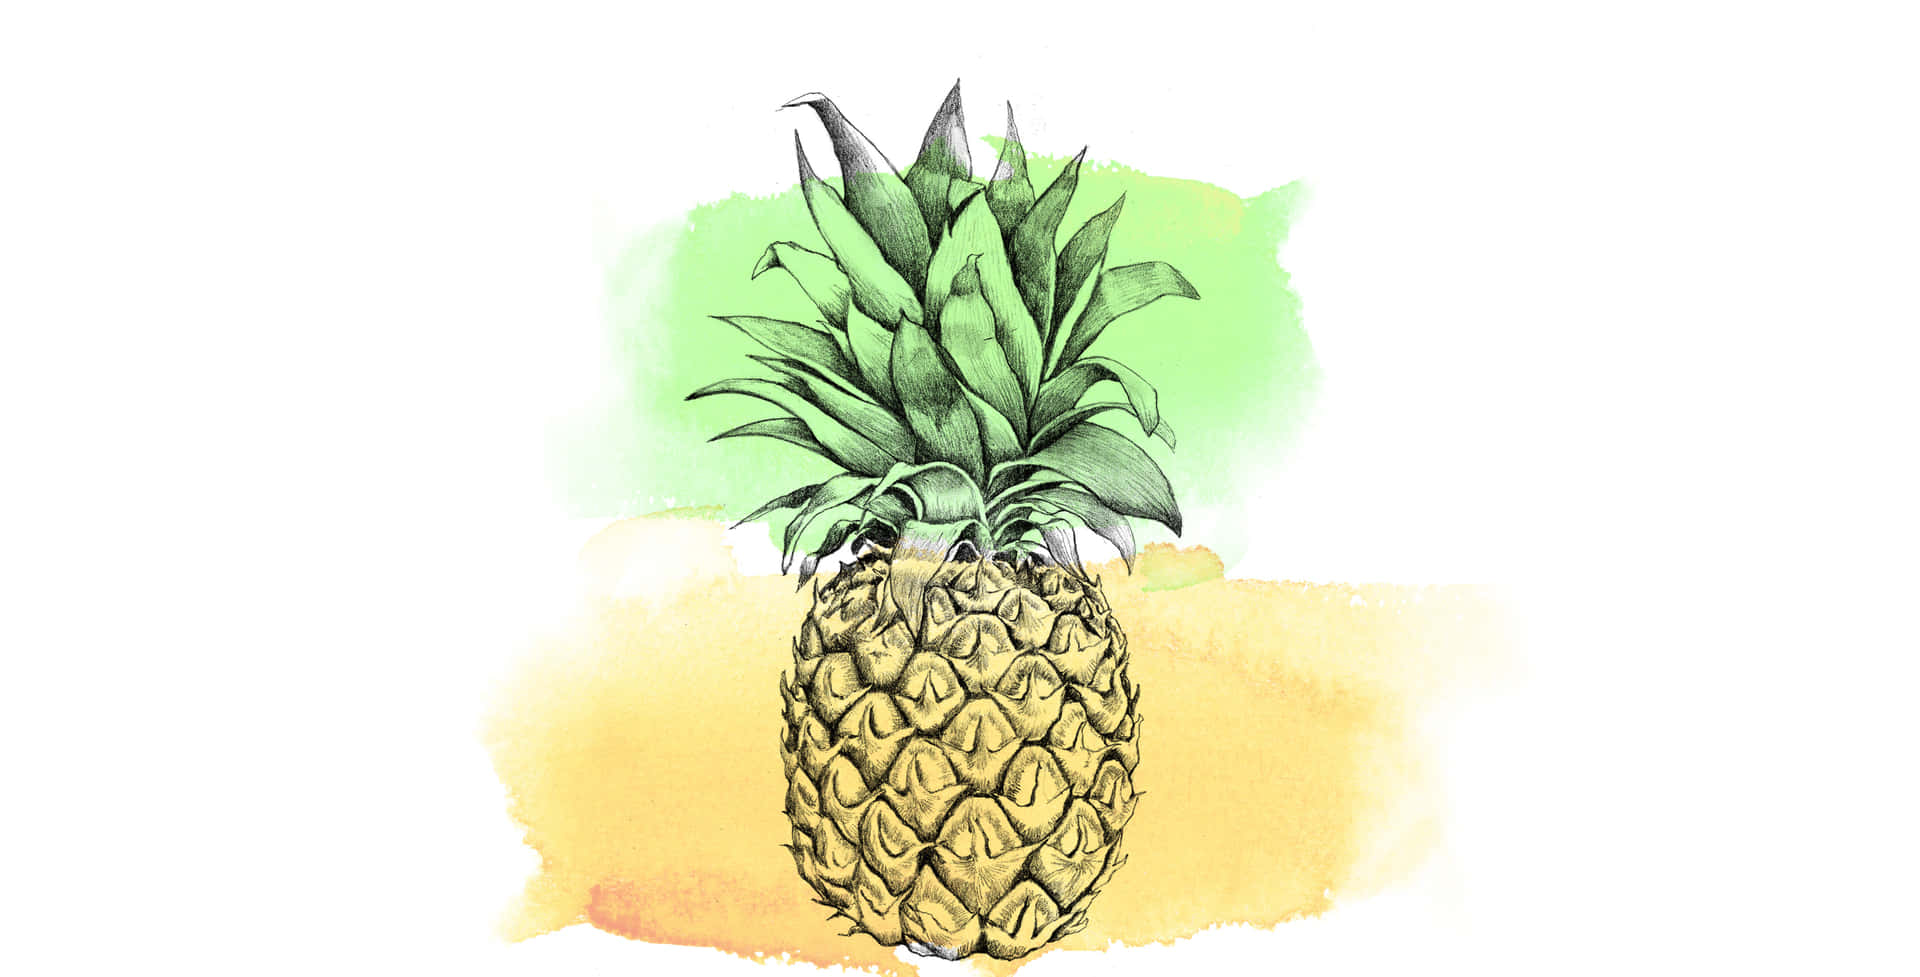 Nyd en sød skrivebordsoplevelse med ananas tapet! Wallpaper